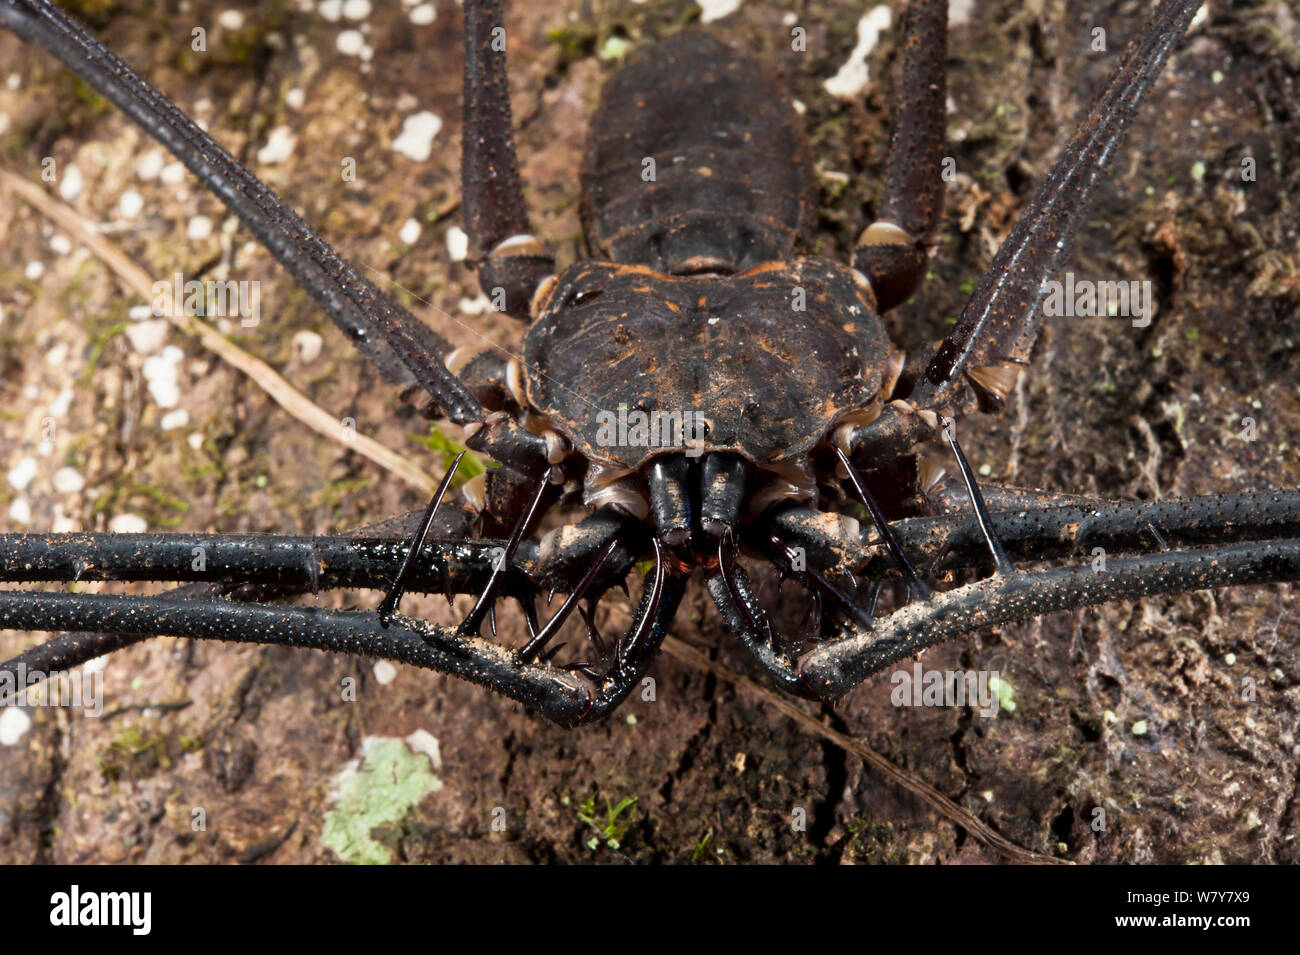 Whip Scorpion sans queue (Amblypygi) Le Parc National Yasuní, Amazon Rainforest, Equateur, Amérique du Sud Banque D'Images